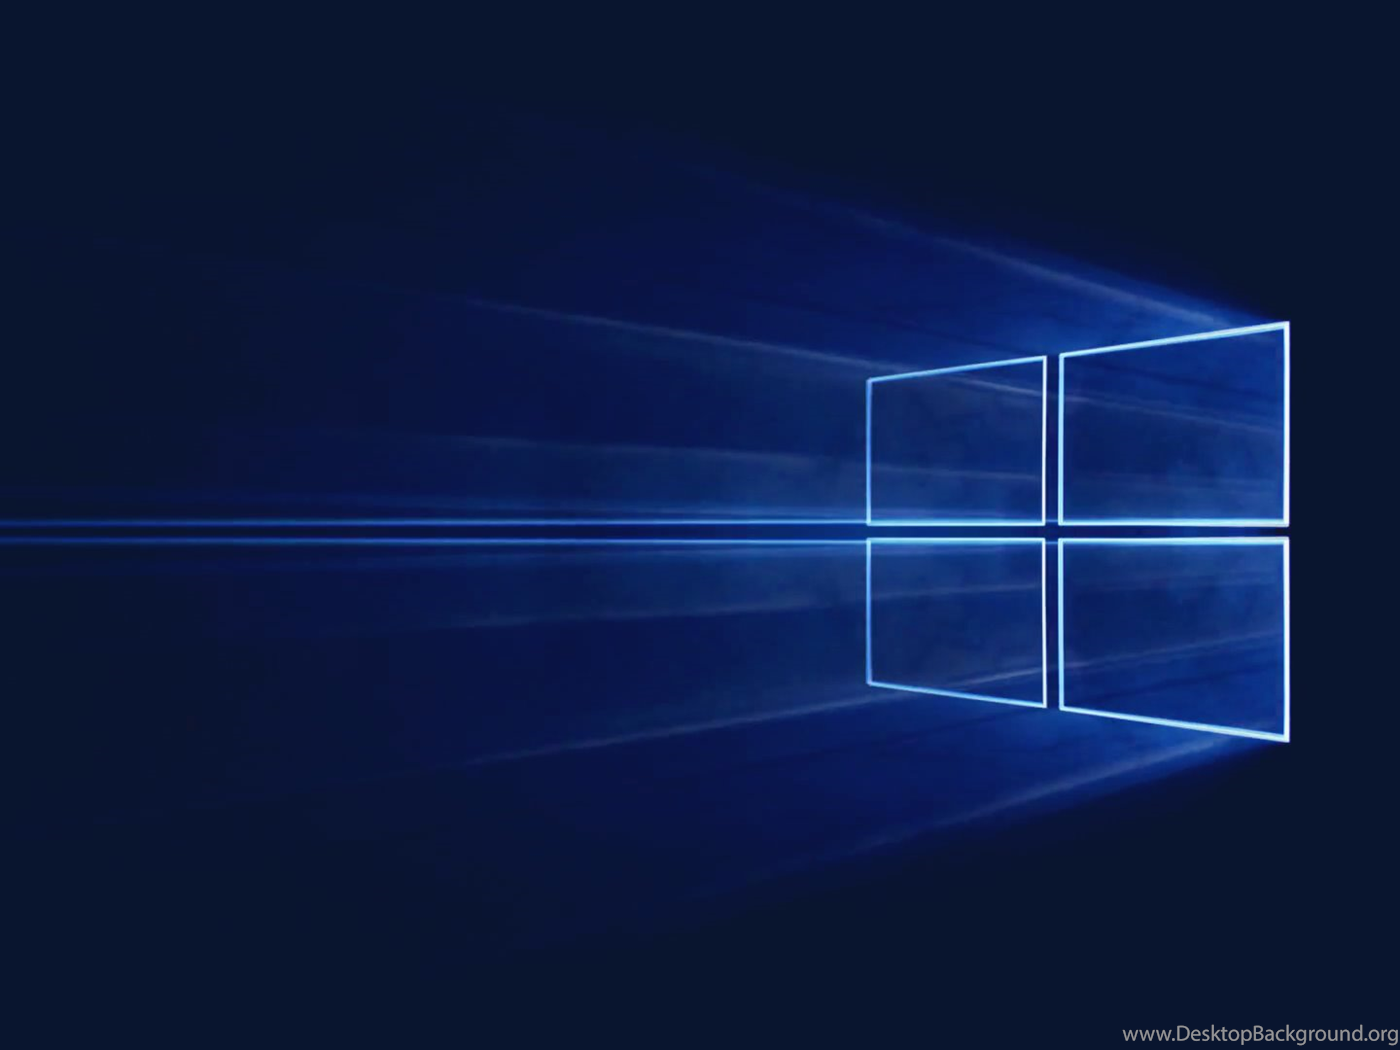 Windows 10 Official Desktop Background Windows 10 Wallpaper